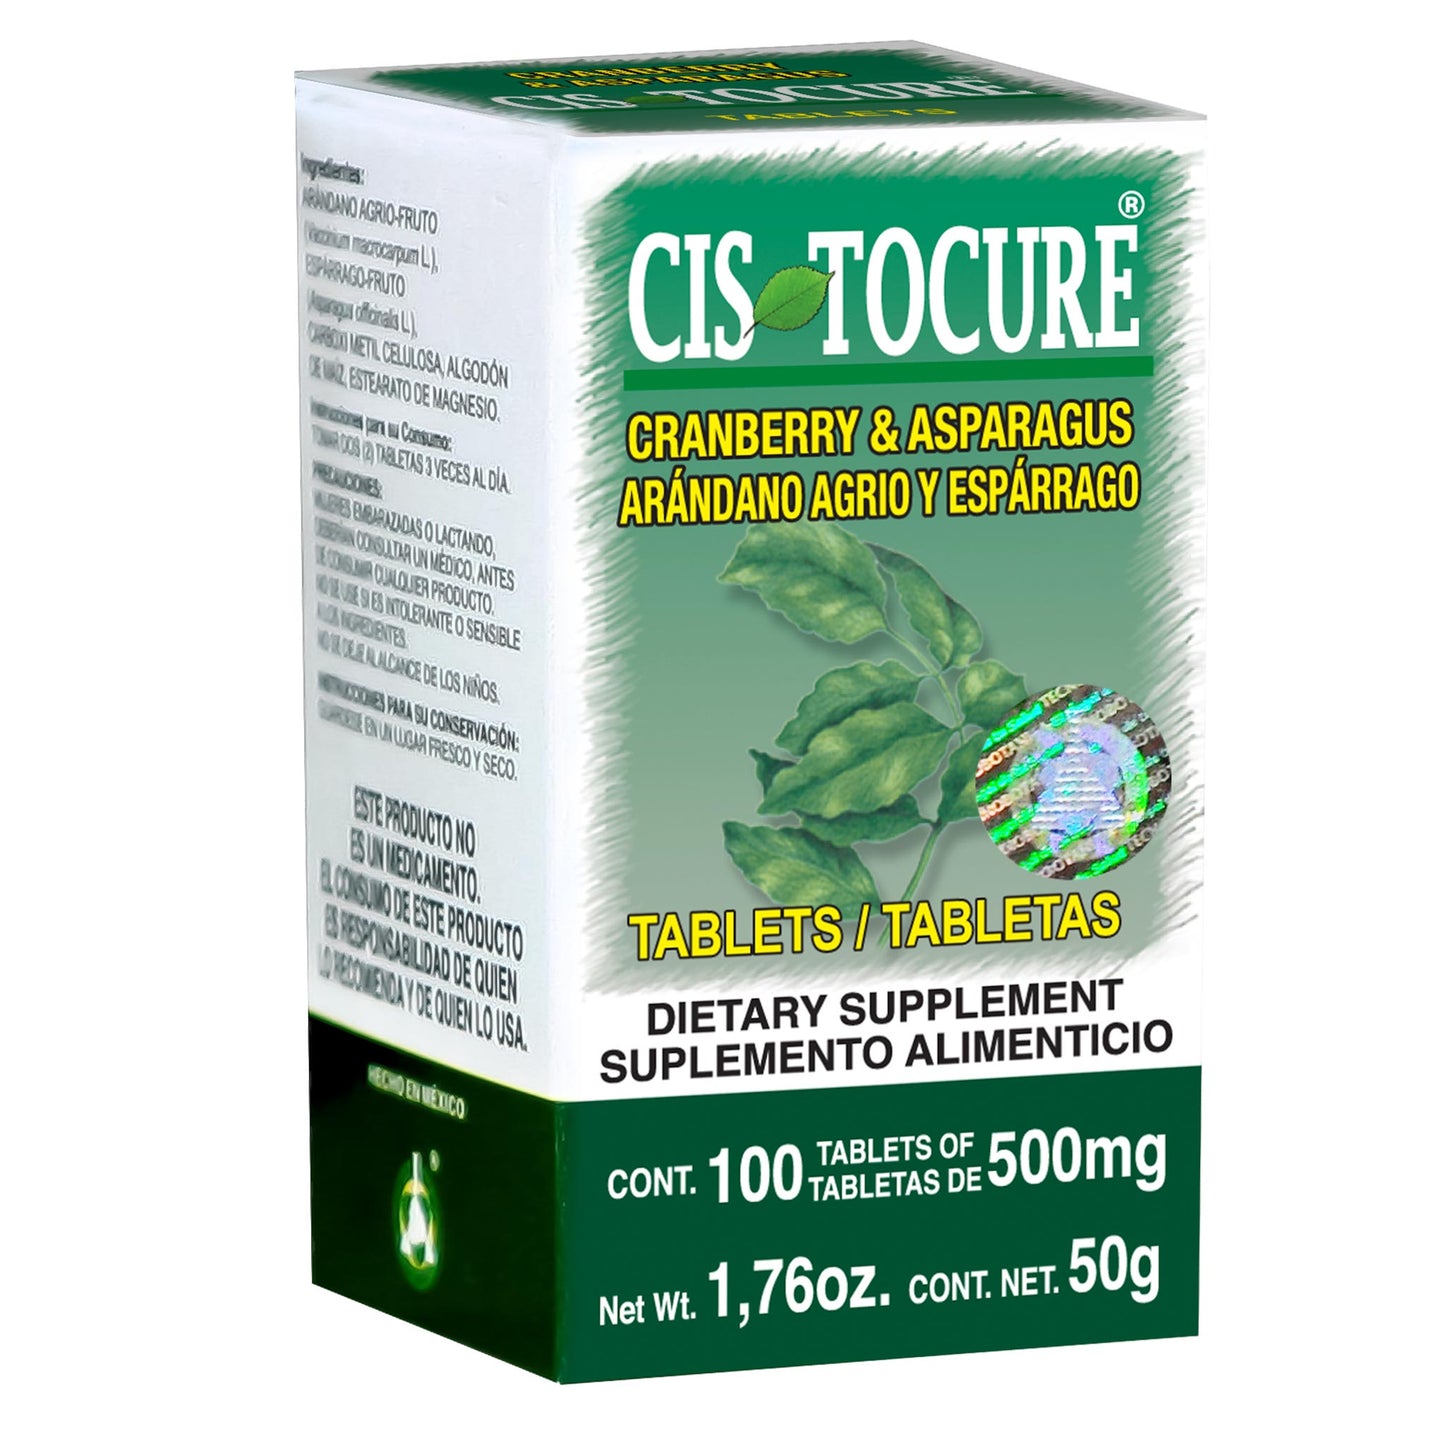 CISTOCURE ® 100 tabletas